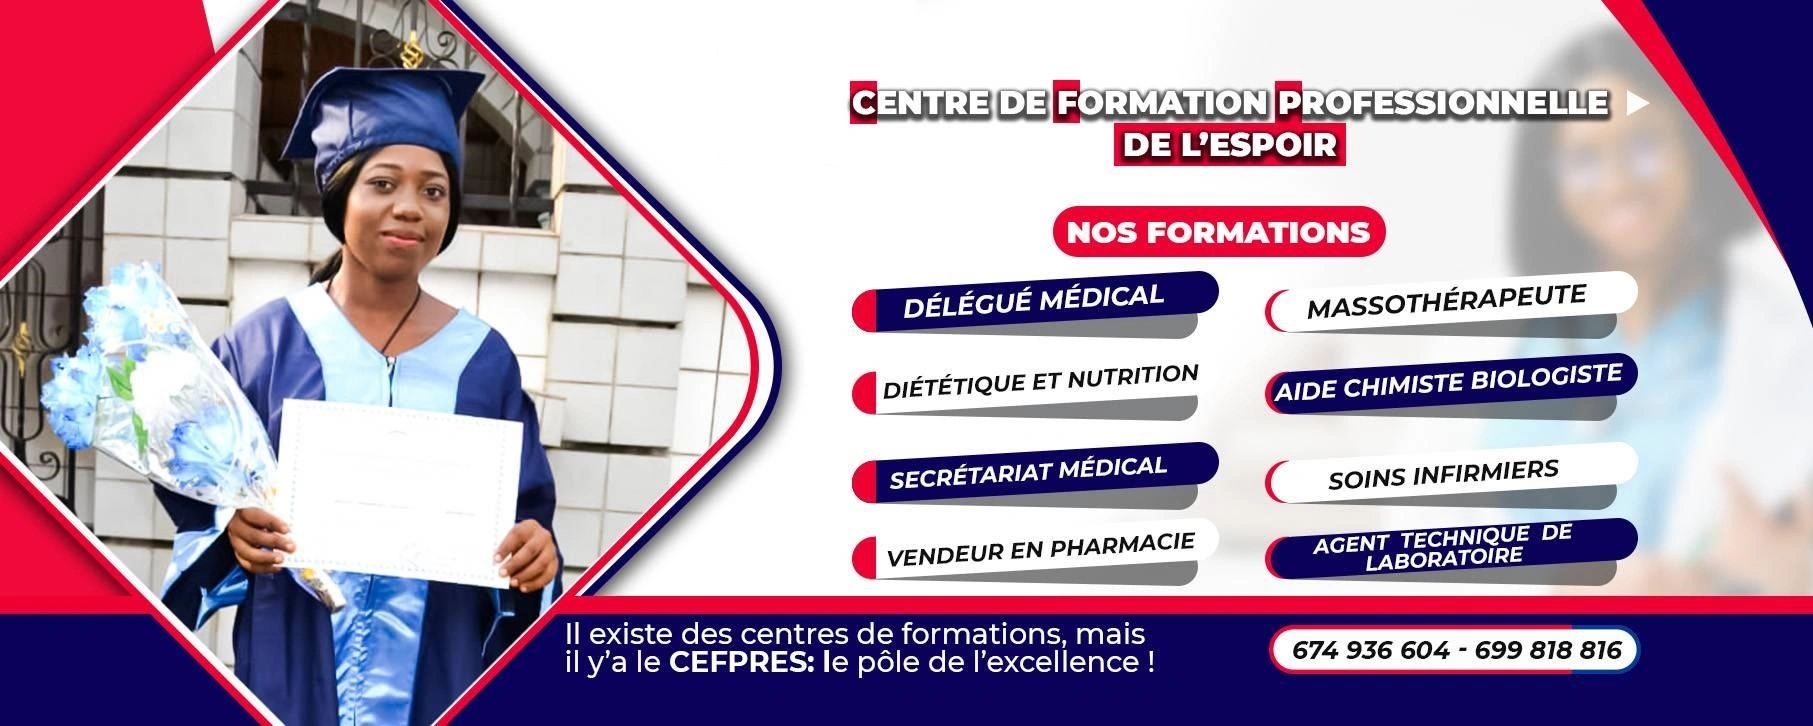 Formation Professionnelle Santé, Nutrition, Diététique, Vendeur Pharmacie, Massothérapeute, Finance,